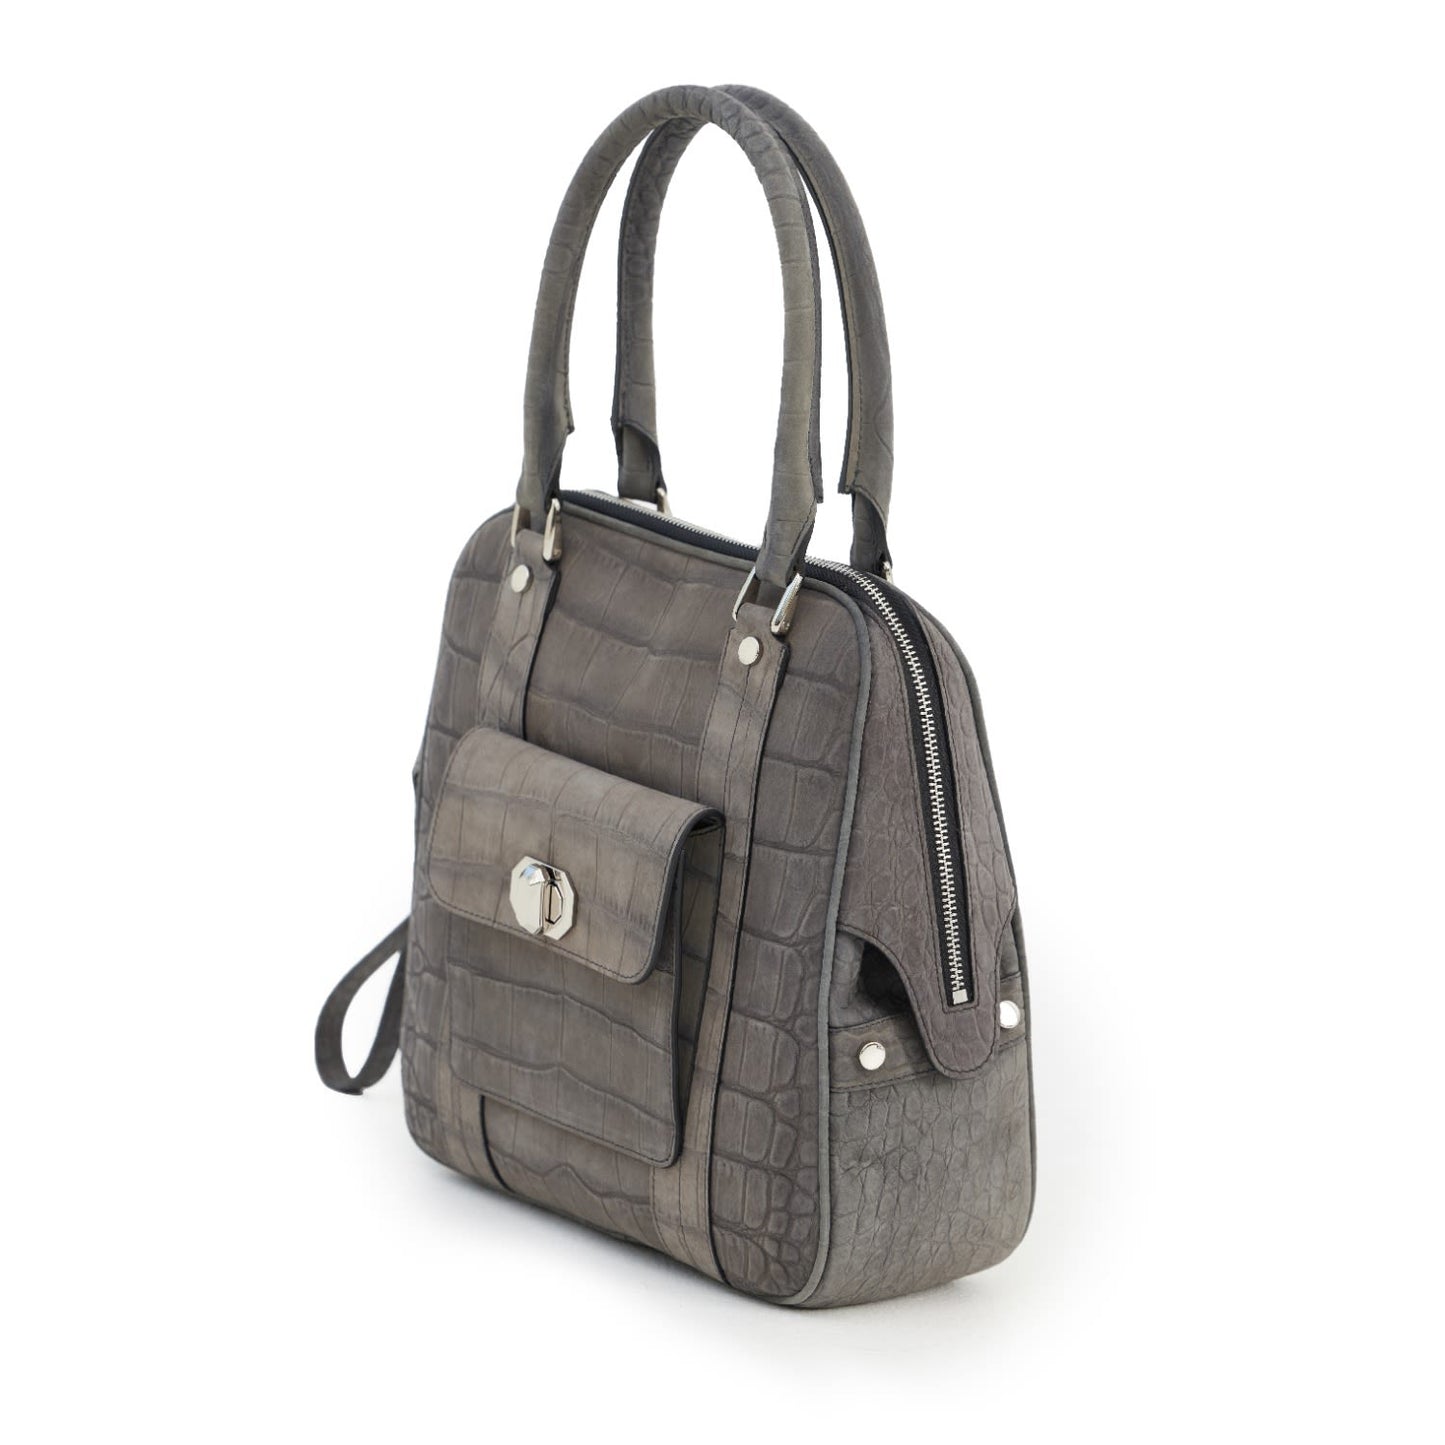 Croco Texture Leather Tote Handbag Grey Small